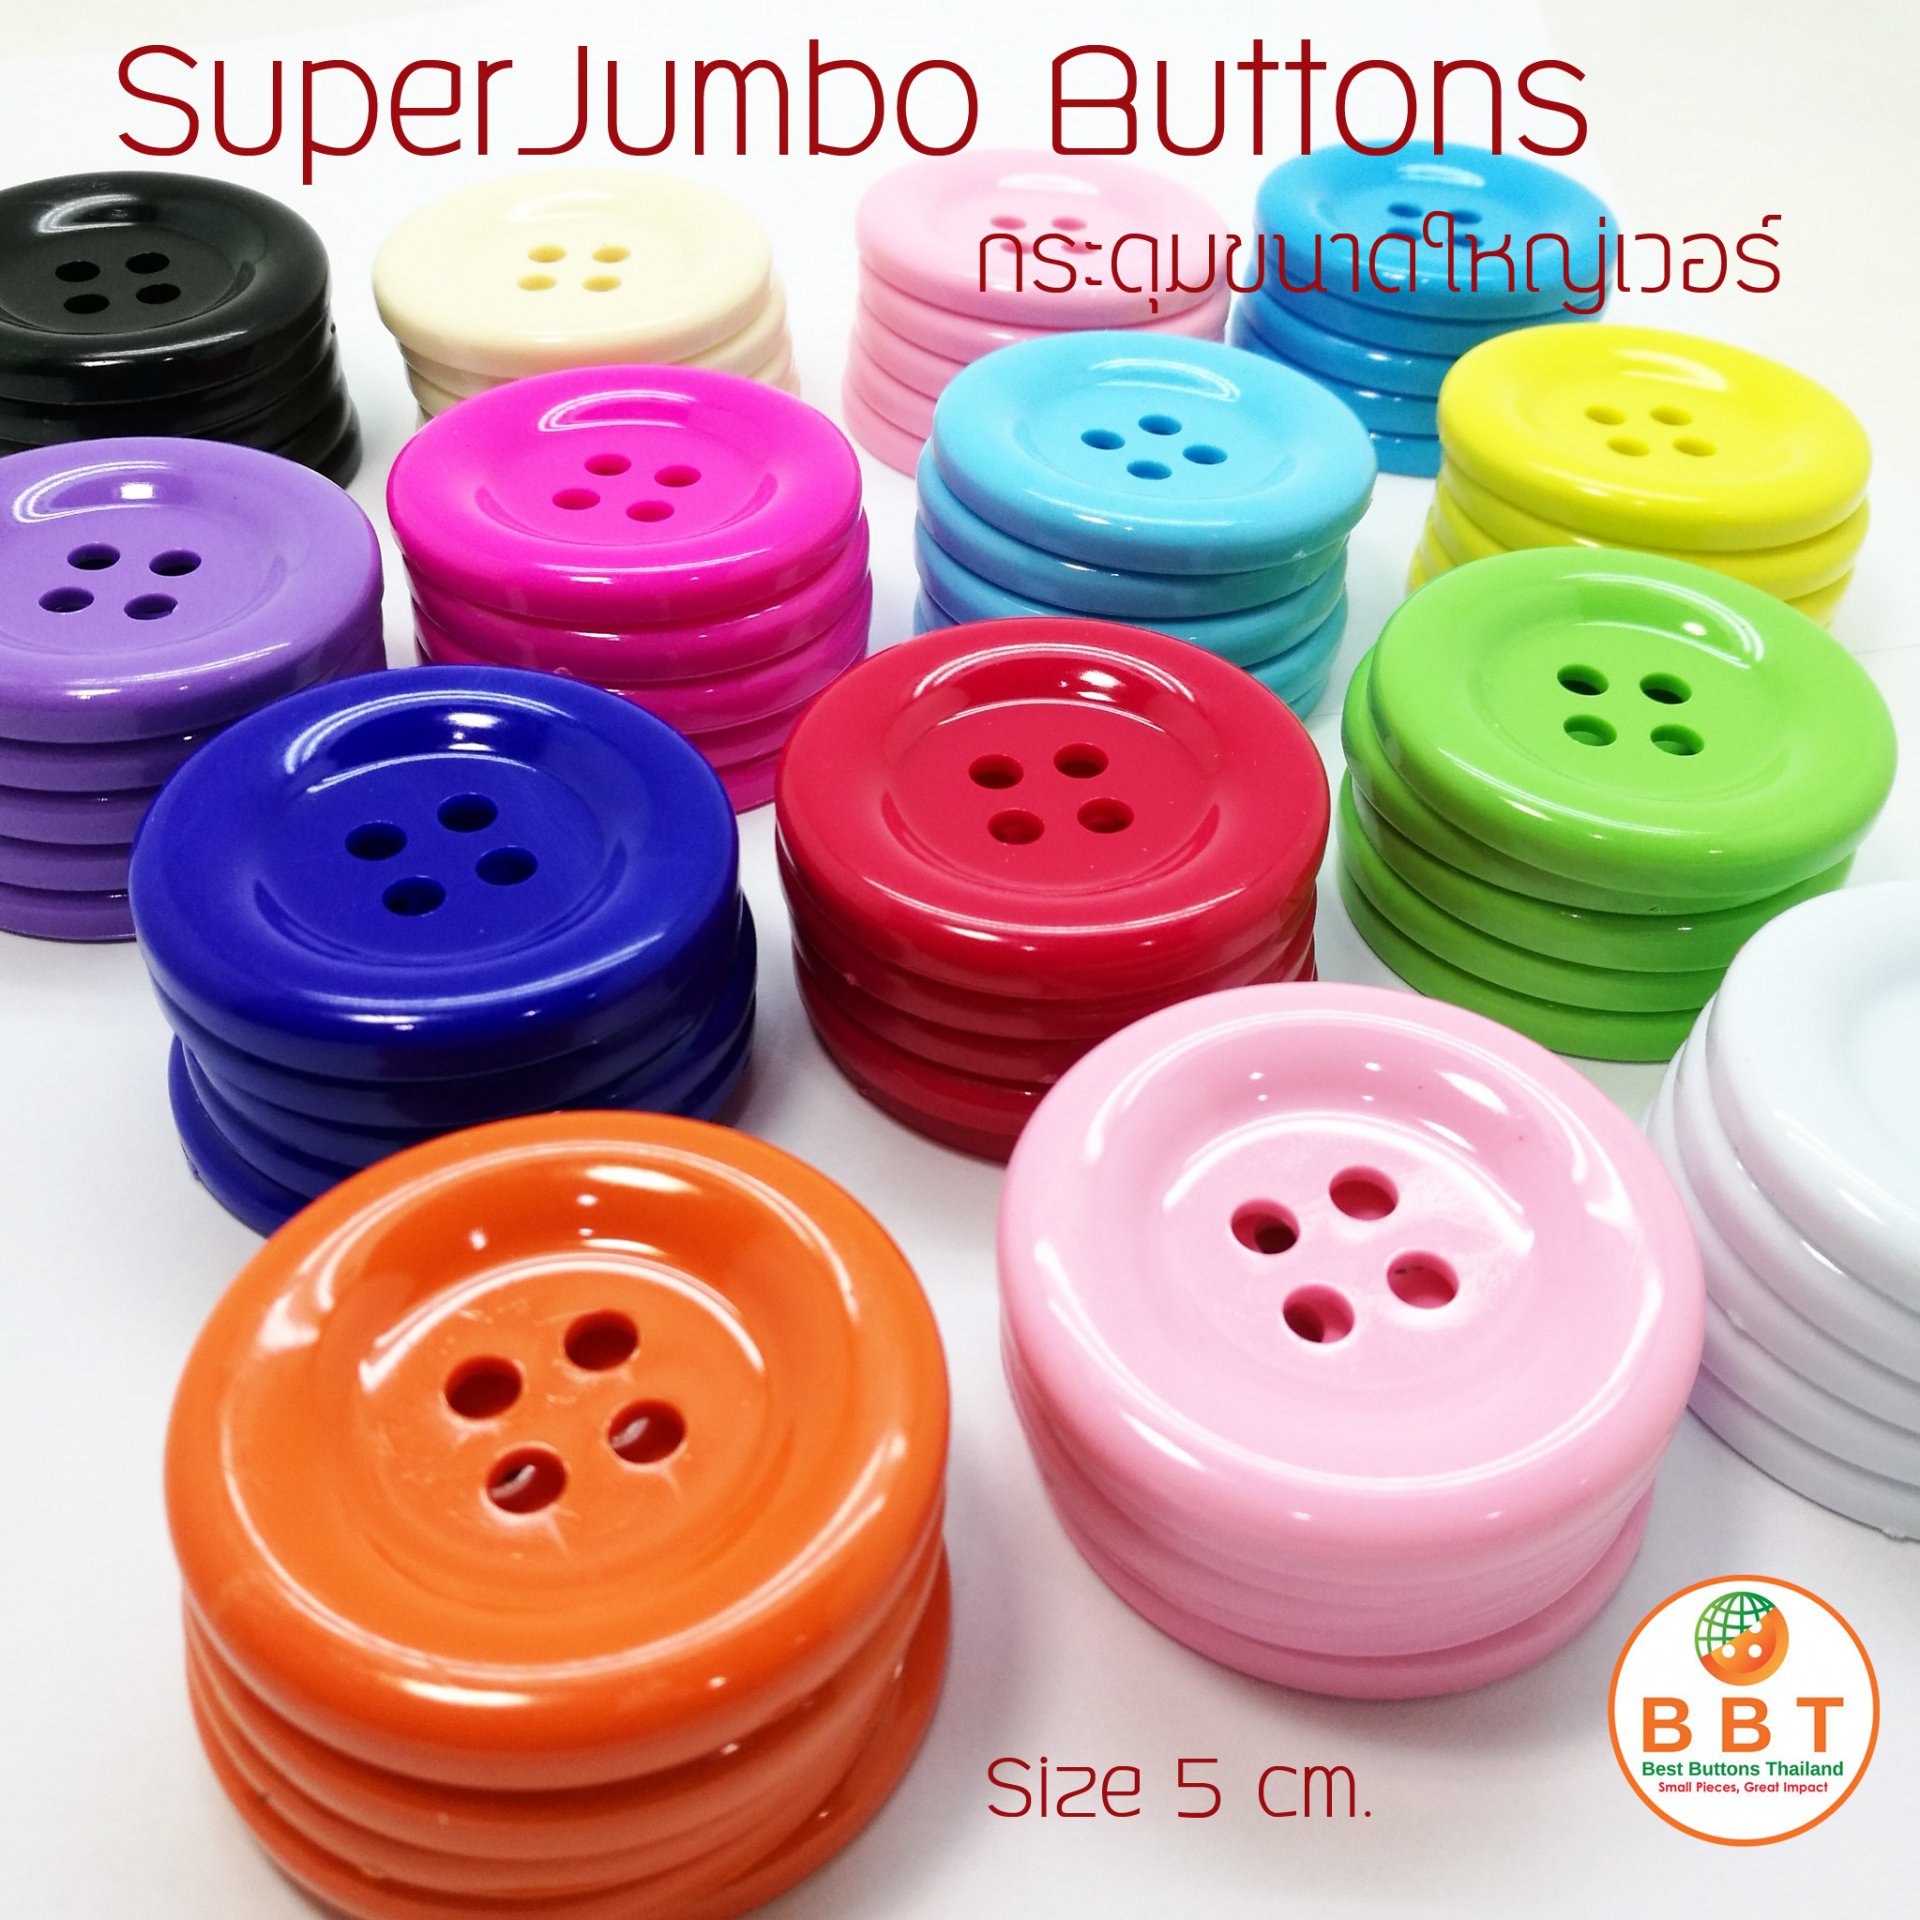 Jumbo Buttons (50 mm.)